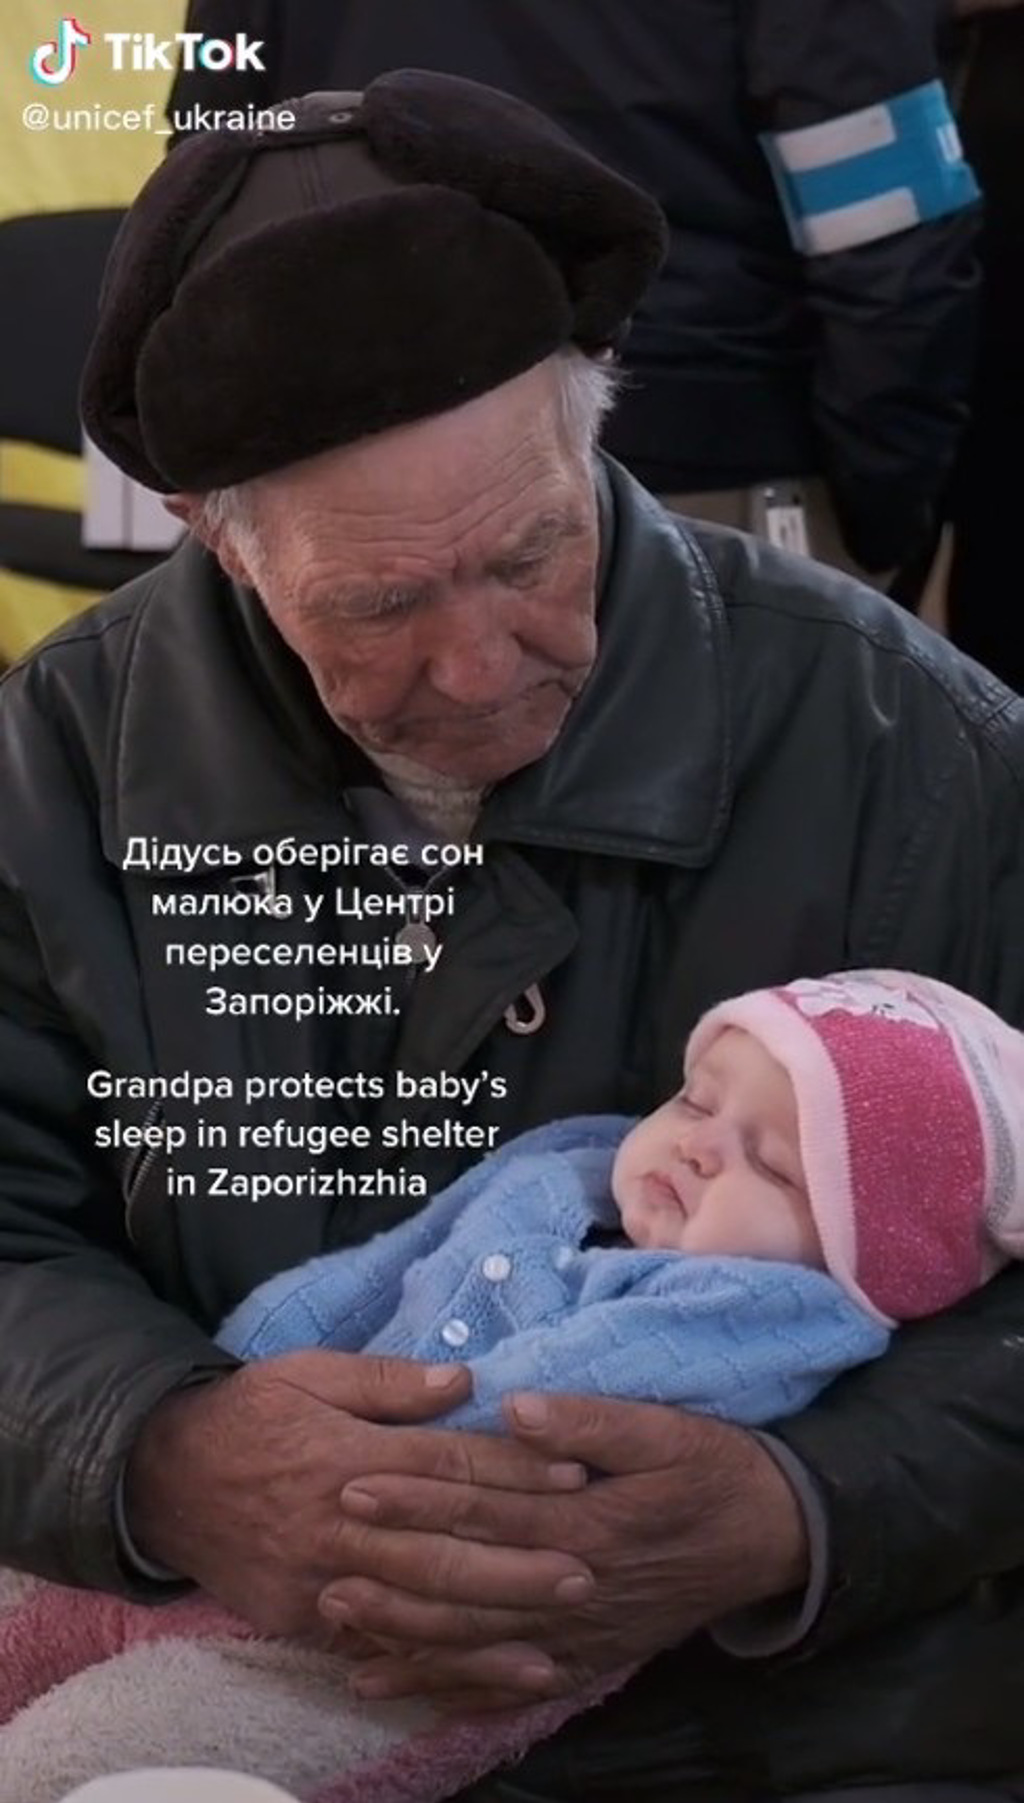 溫馨影片曝光引起轟動 (圖/翻攝「UNICEF Ukraine」TikTok)